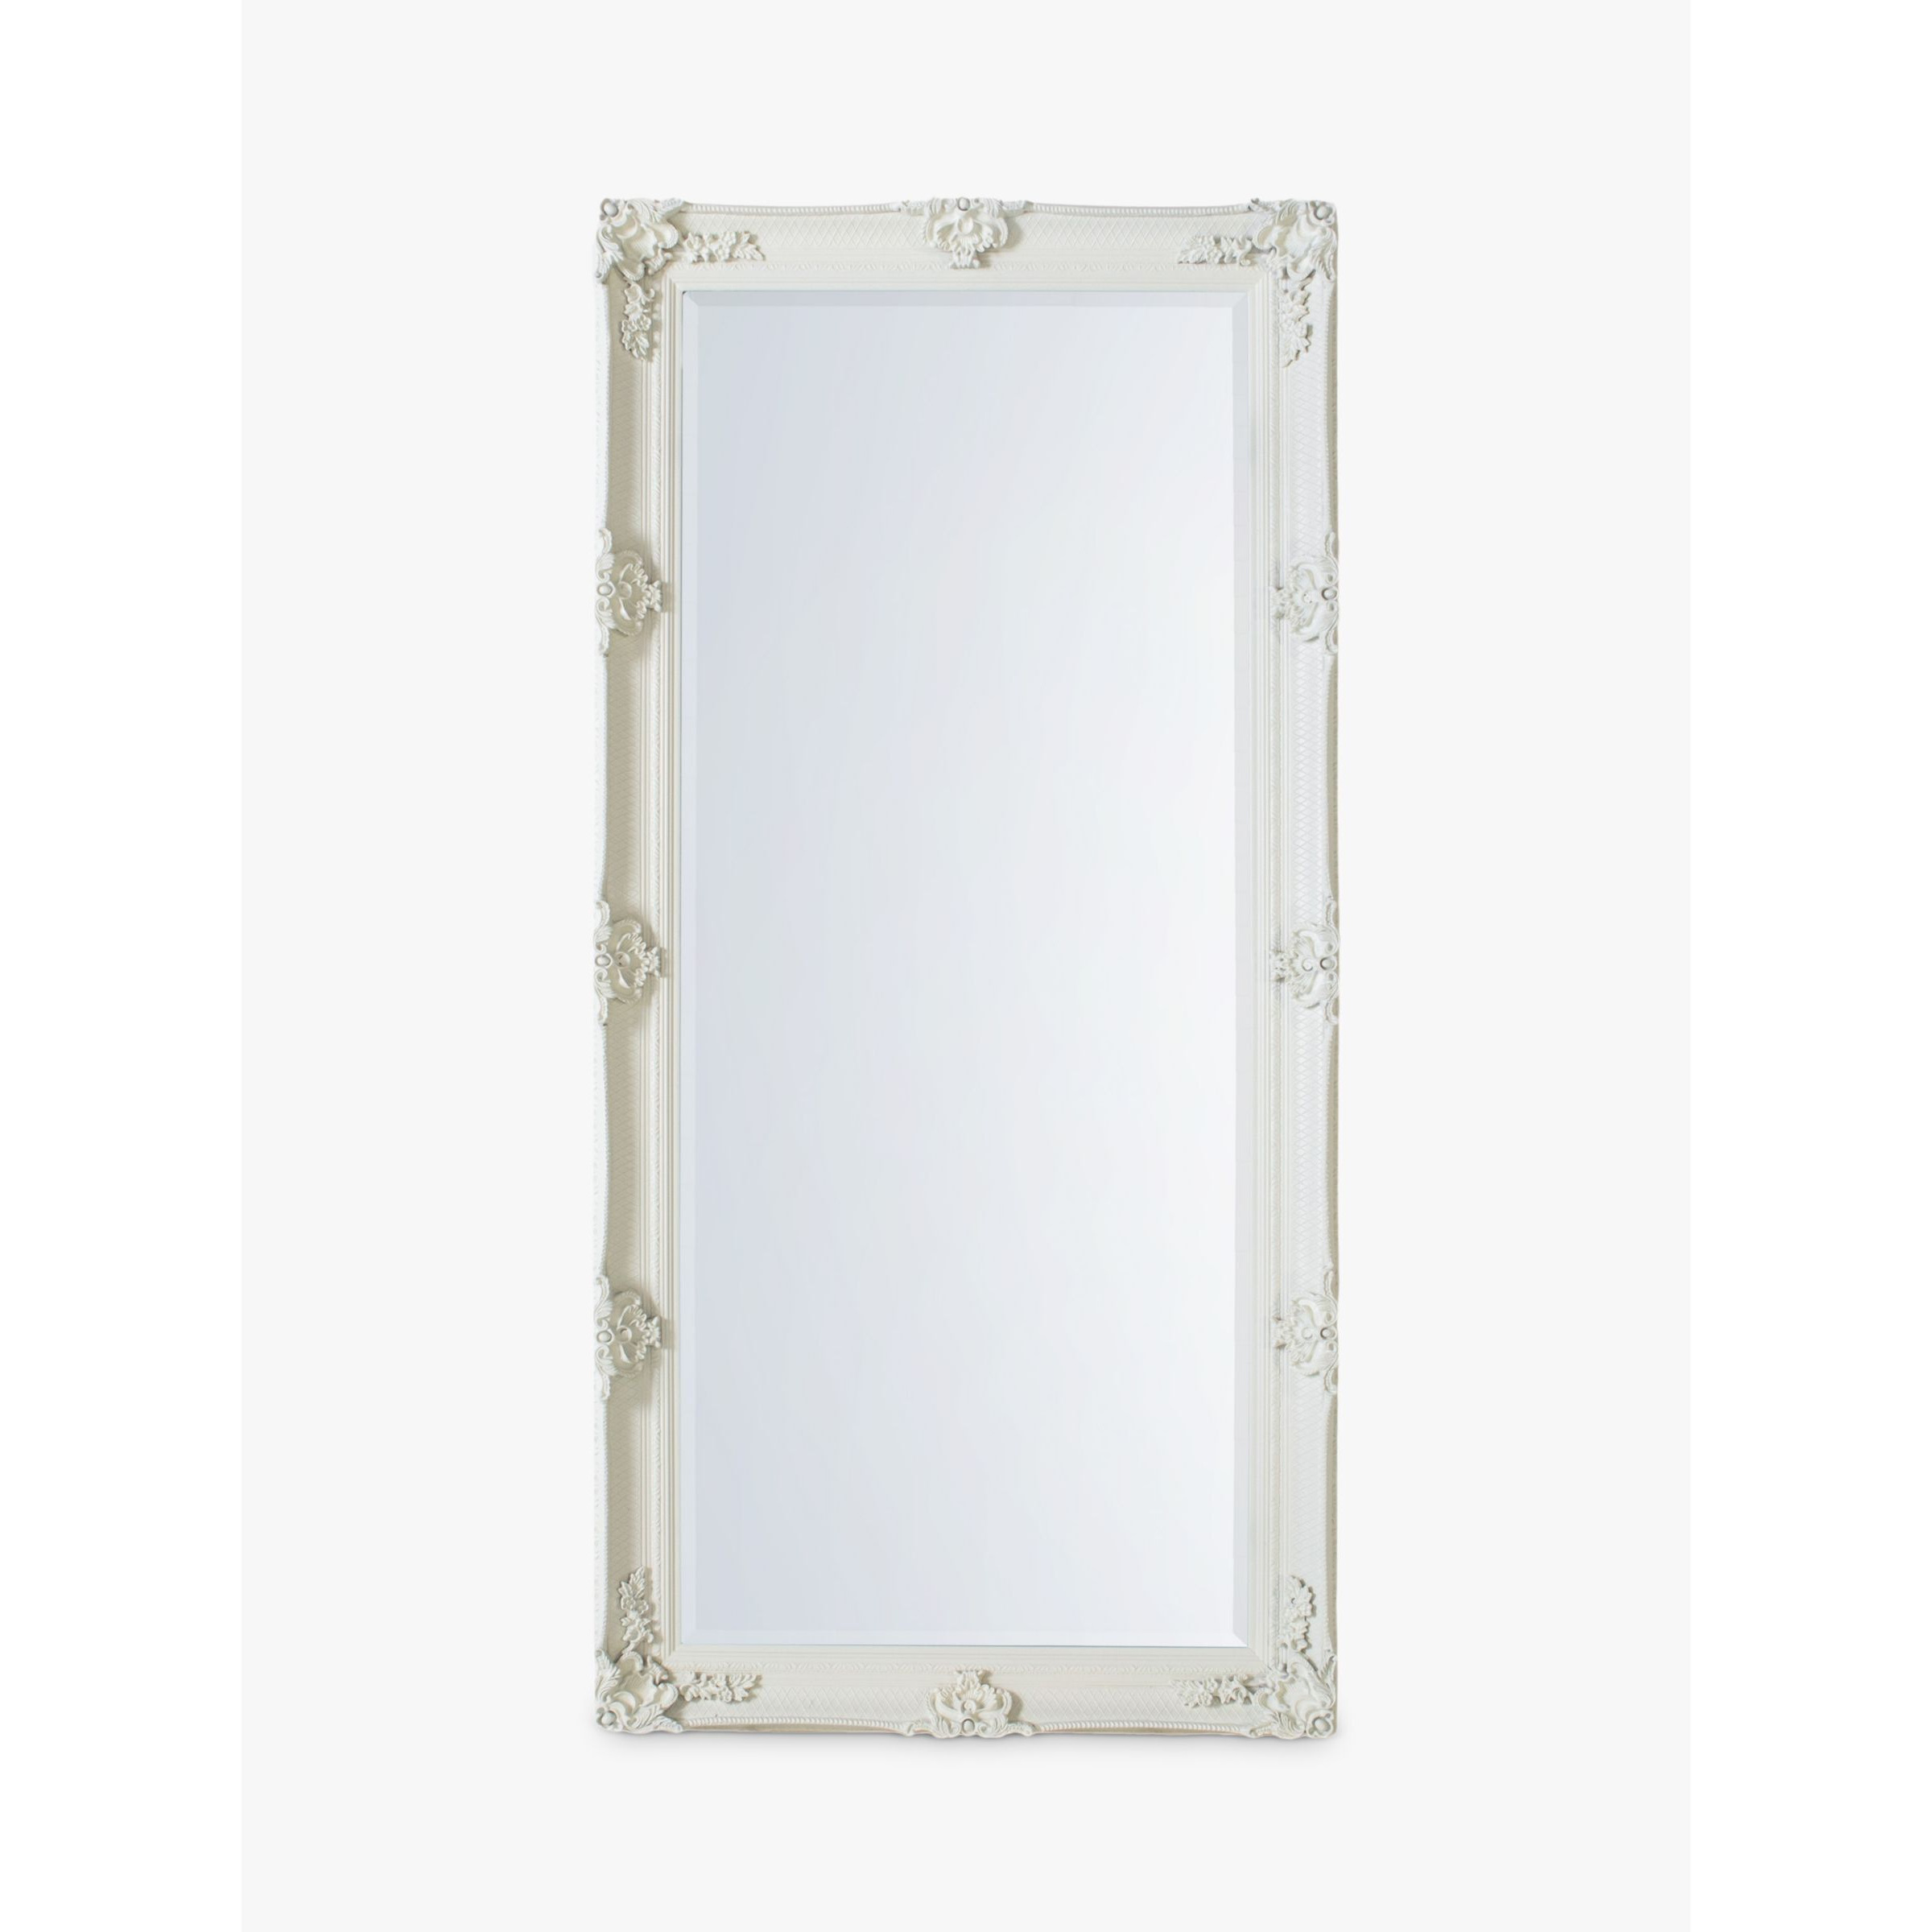 Gallery Direct Denver Baroque Wood Frame Full-Length Leaner Mirror, 165 x 79.5cm - image 1